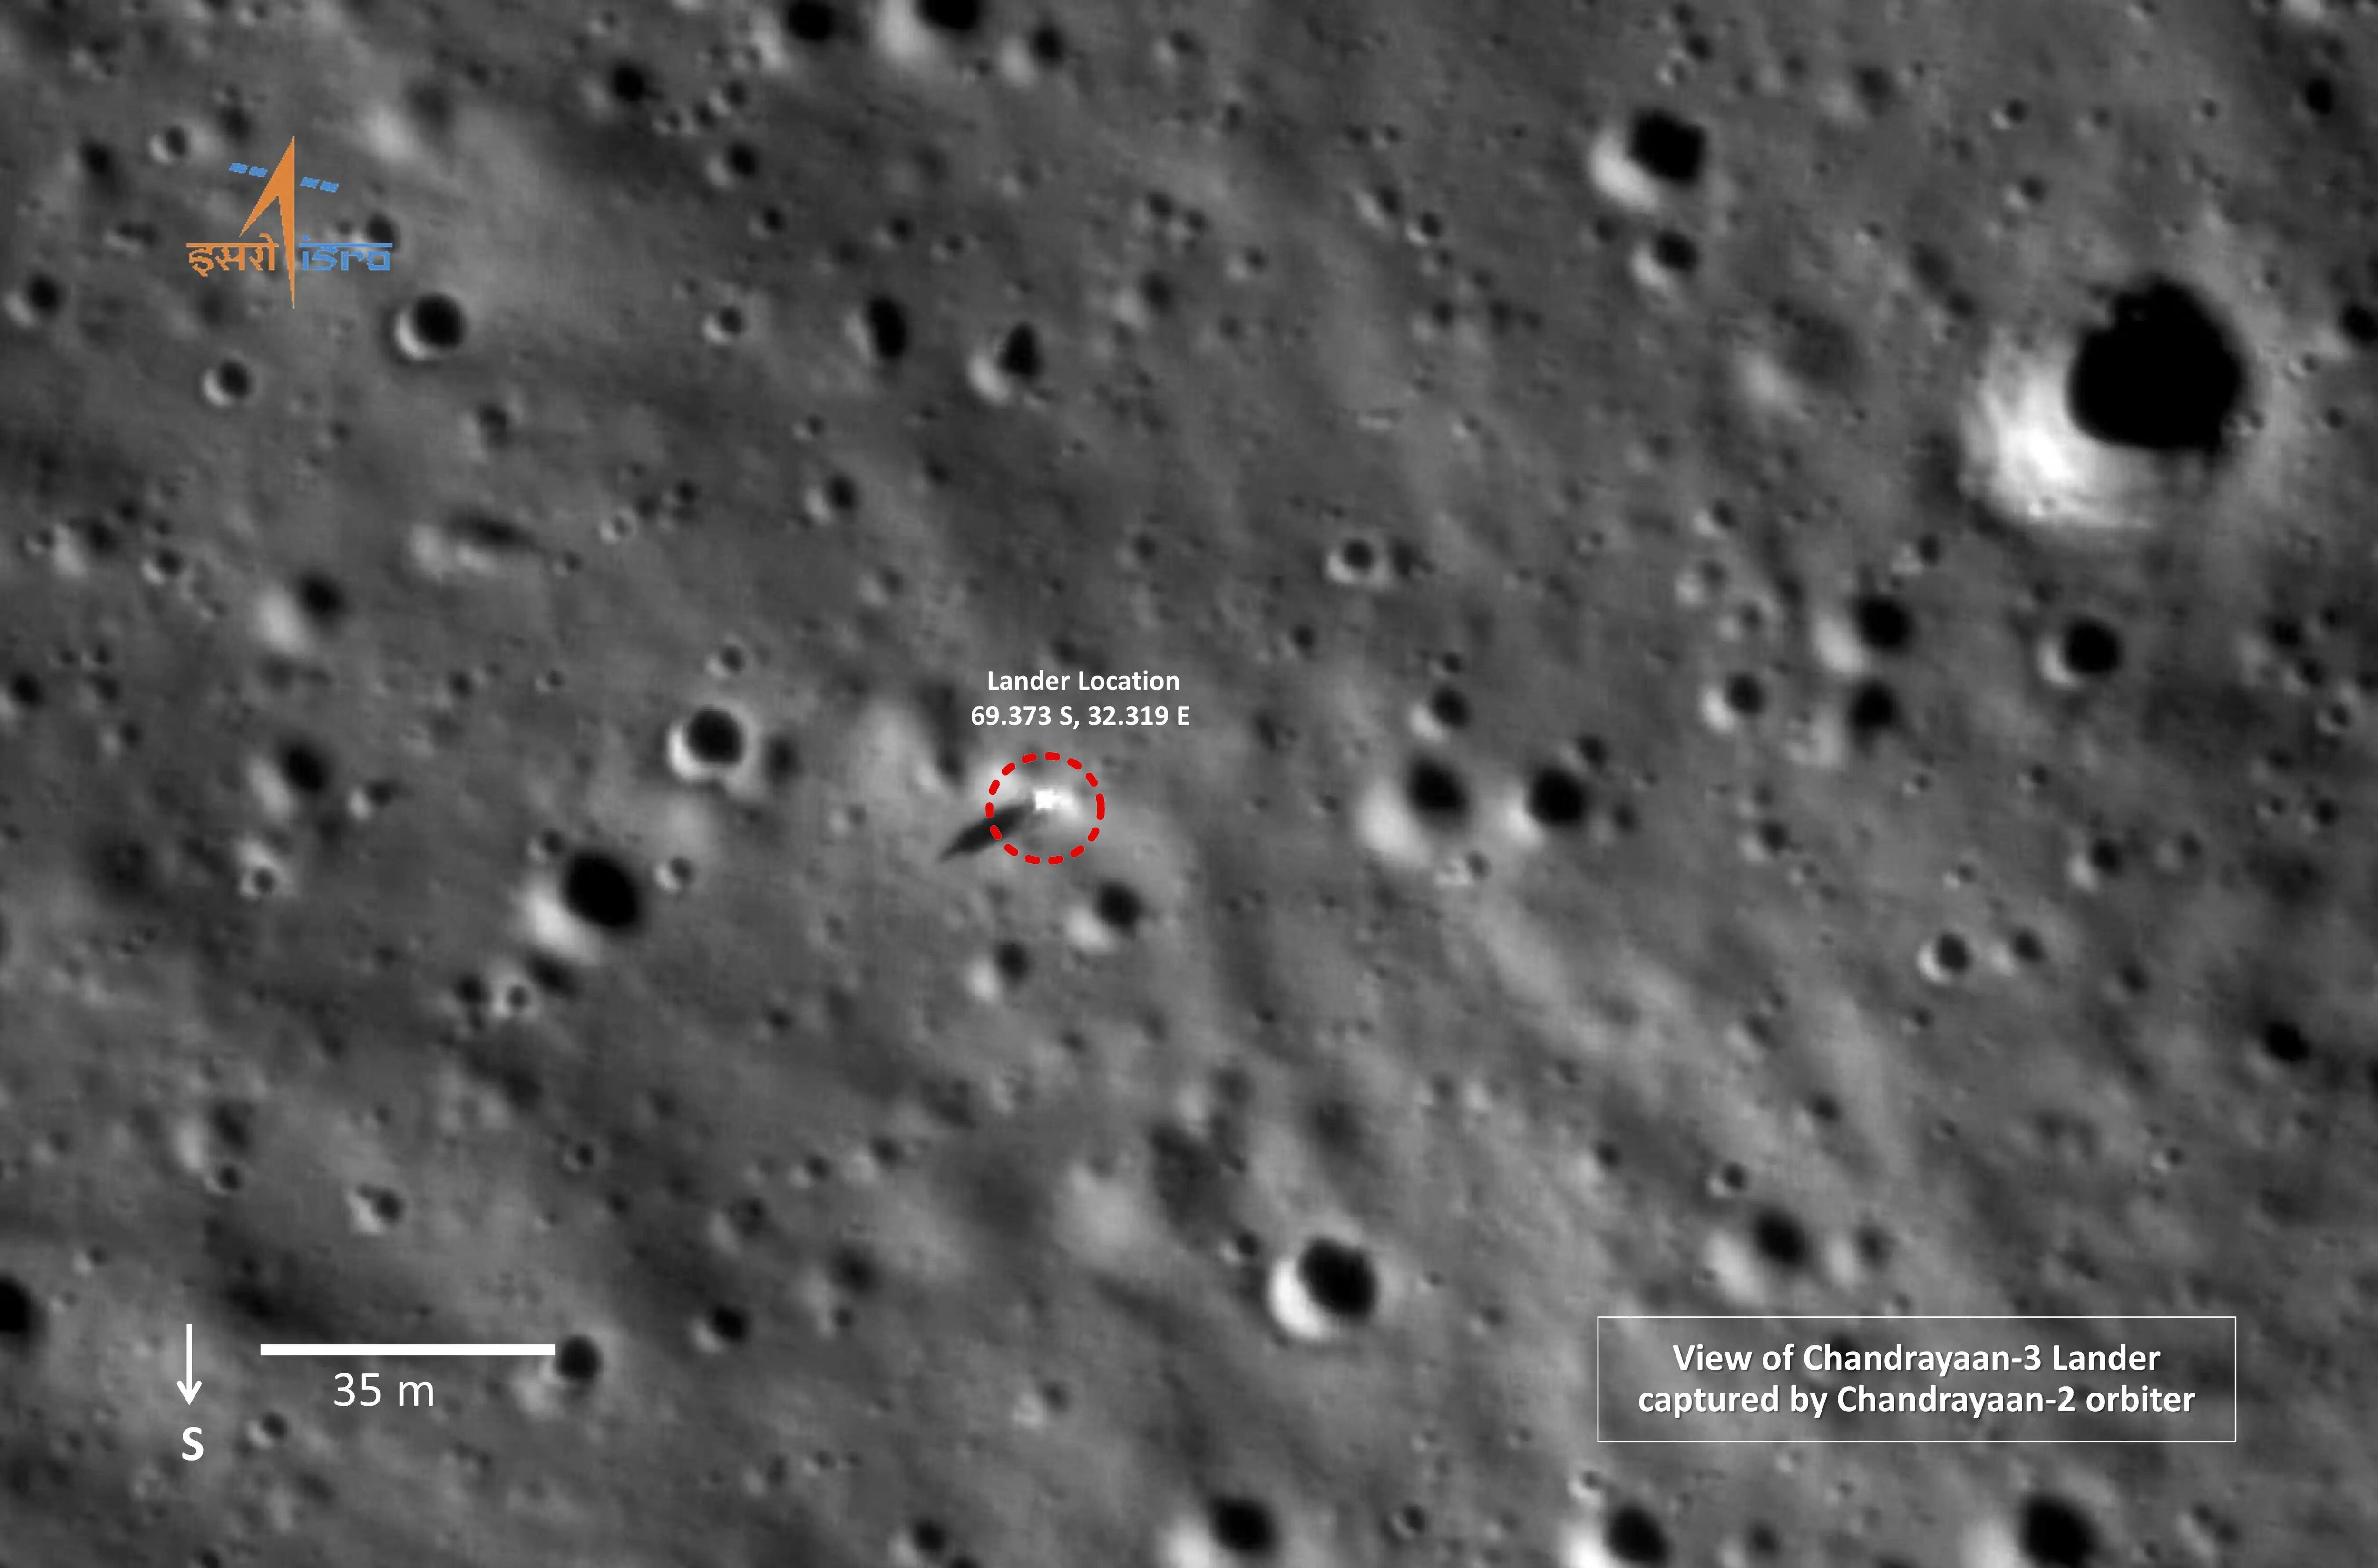 29일(현지 시각) 인도우주연구기구(ISRO)가 공개한 달 남극에 착륙한 찬드라얀 3호 사진. 빨간 점선안의 흰 물체가 인류 최초로 달 남극에 착륙한 찬드라얀 3호다. 이 사진은 찬드라얀 2호의 궤도선이 촬영했다. 앞서 2019년 찬드라얀 2호의 착륙선은 달 남극 착륙에 실패했다. 달의 남극은 운석 충돌로 울퉁불퉁한 지형이 많아 착륙이 극도로 어려운 곳으로 꼽힌다. 찬드라얀 3호는 다음 달 3일까지 달 남극의 자원을 탐사할 예정이다./EPA 연합뉴스